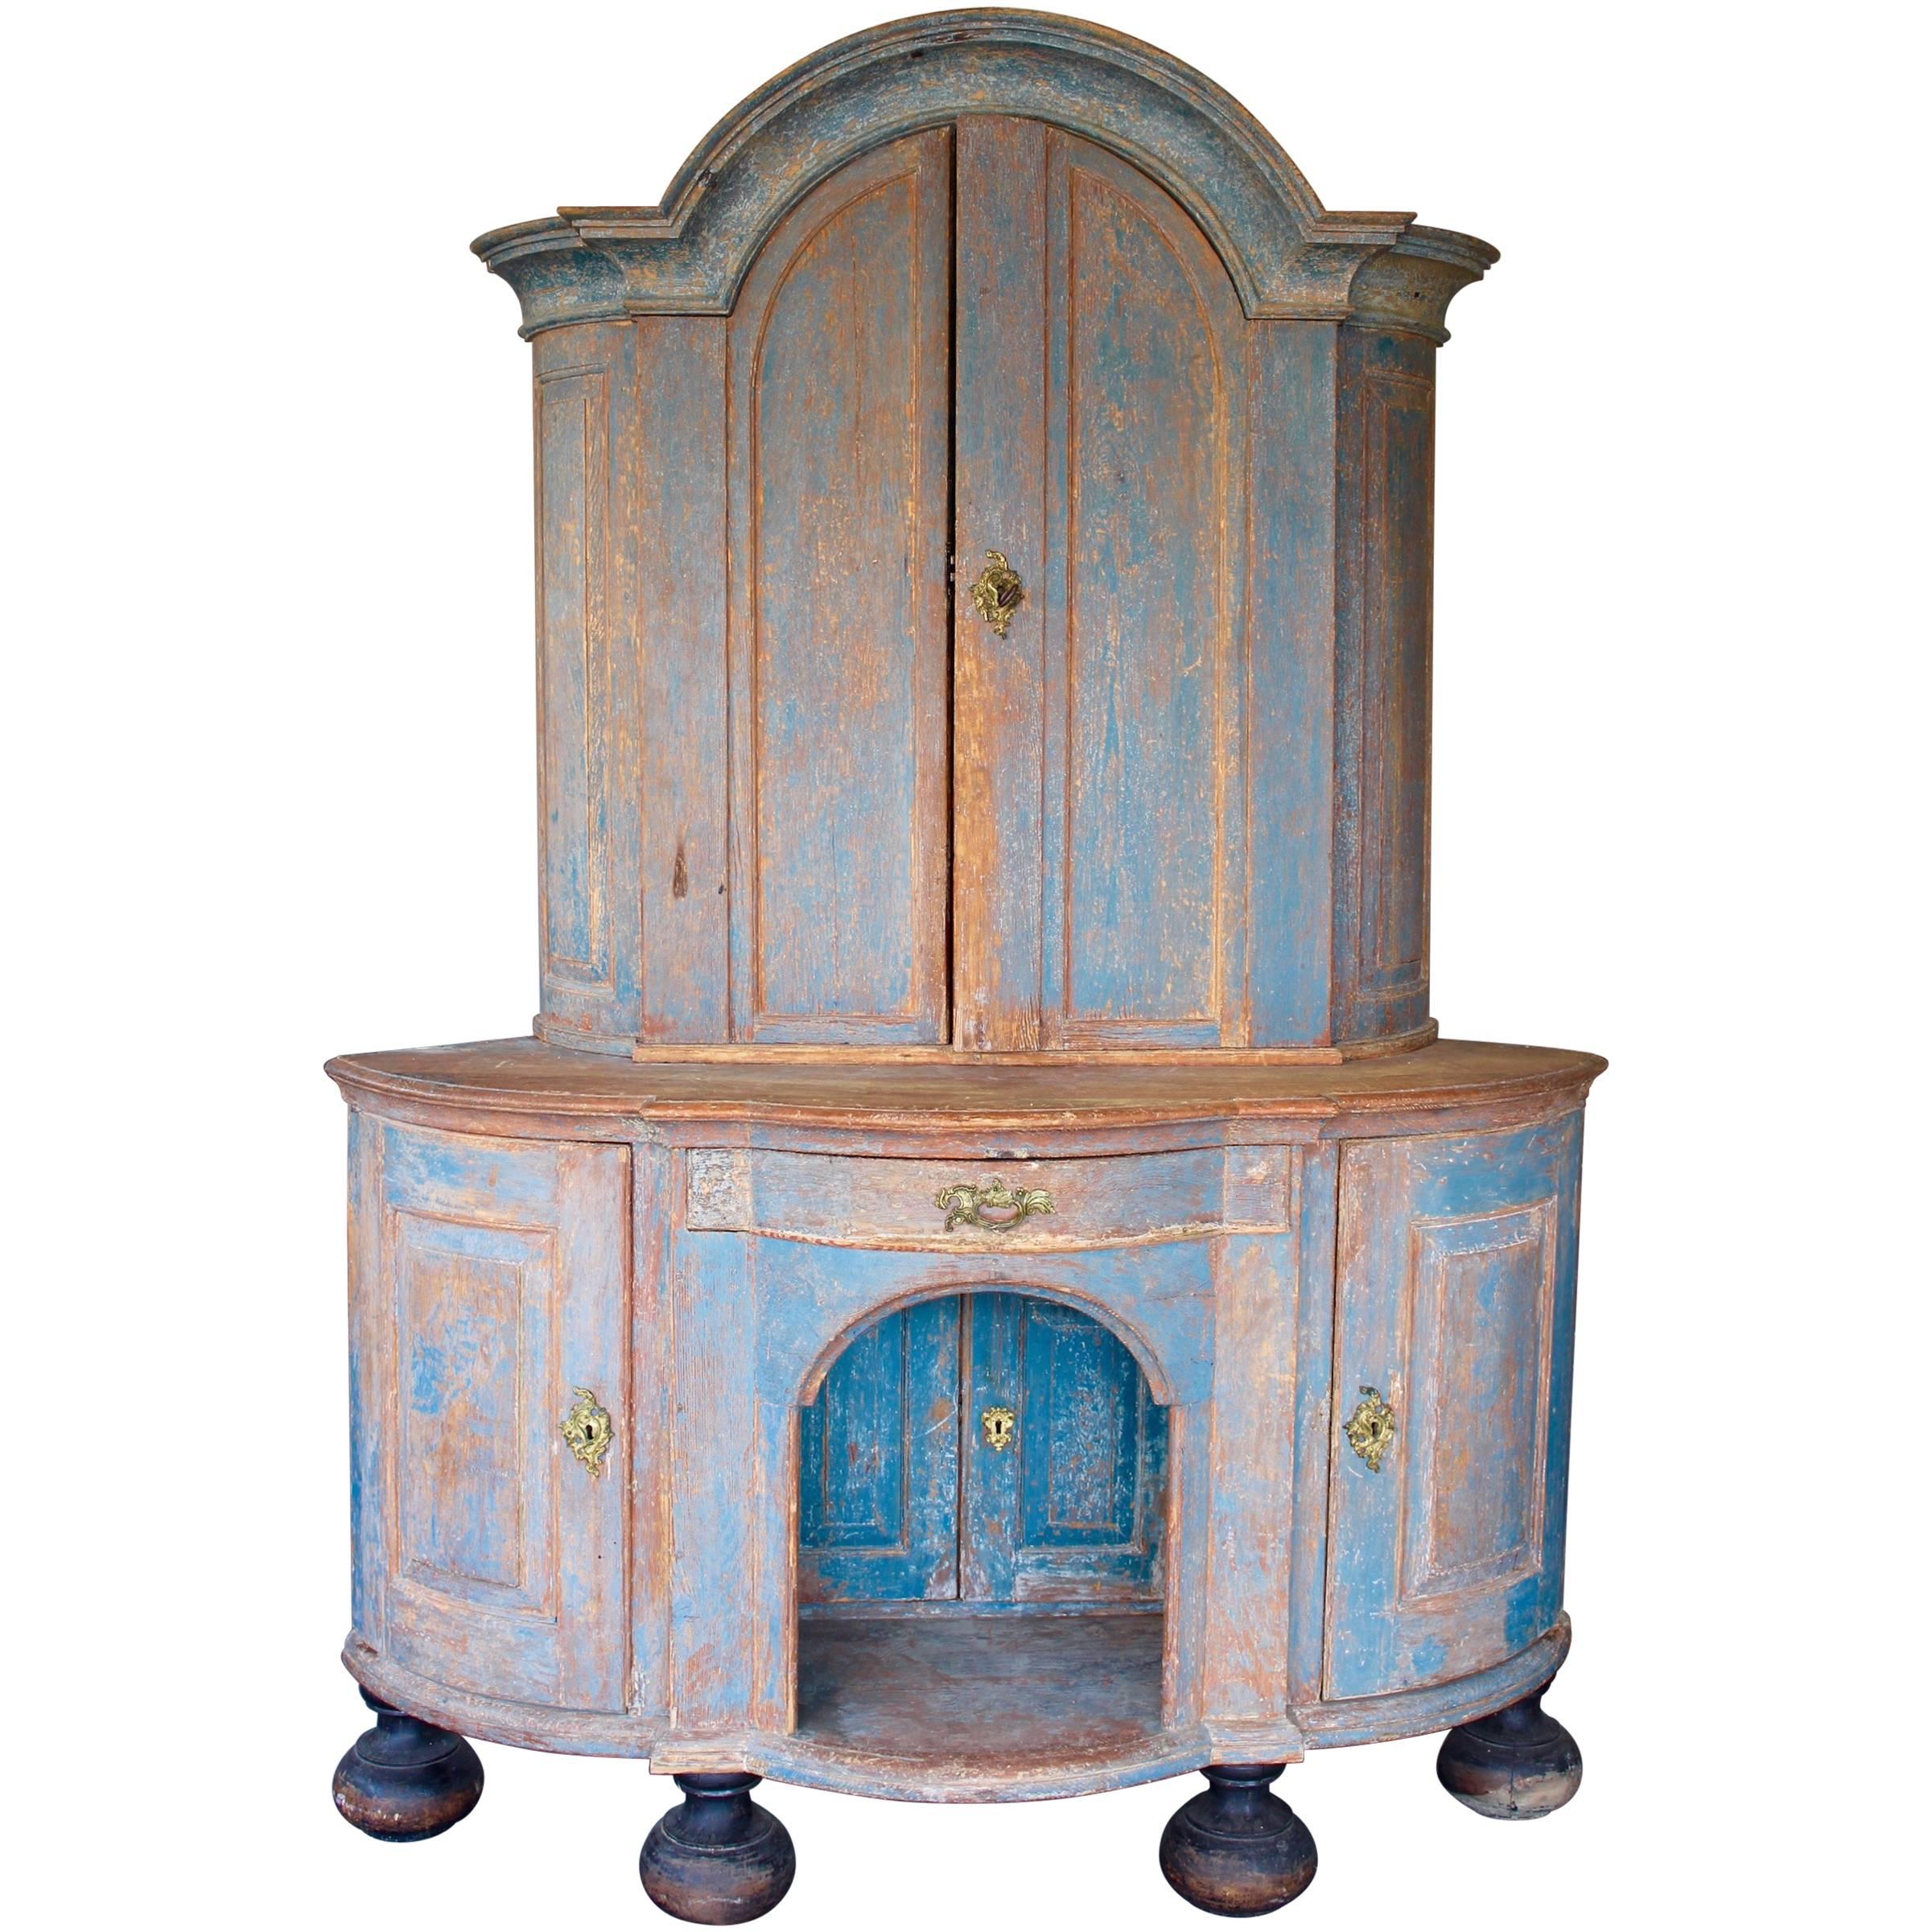 Geschwungene Form mit profiliertem Gesims, vier Türen mit Einlegeböden, eine Schublade und ein Einlegeboden, blau lackiert.